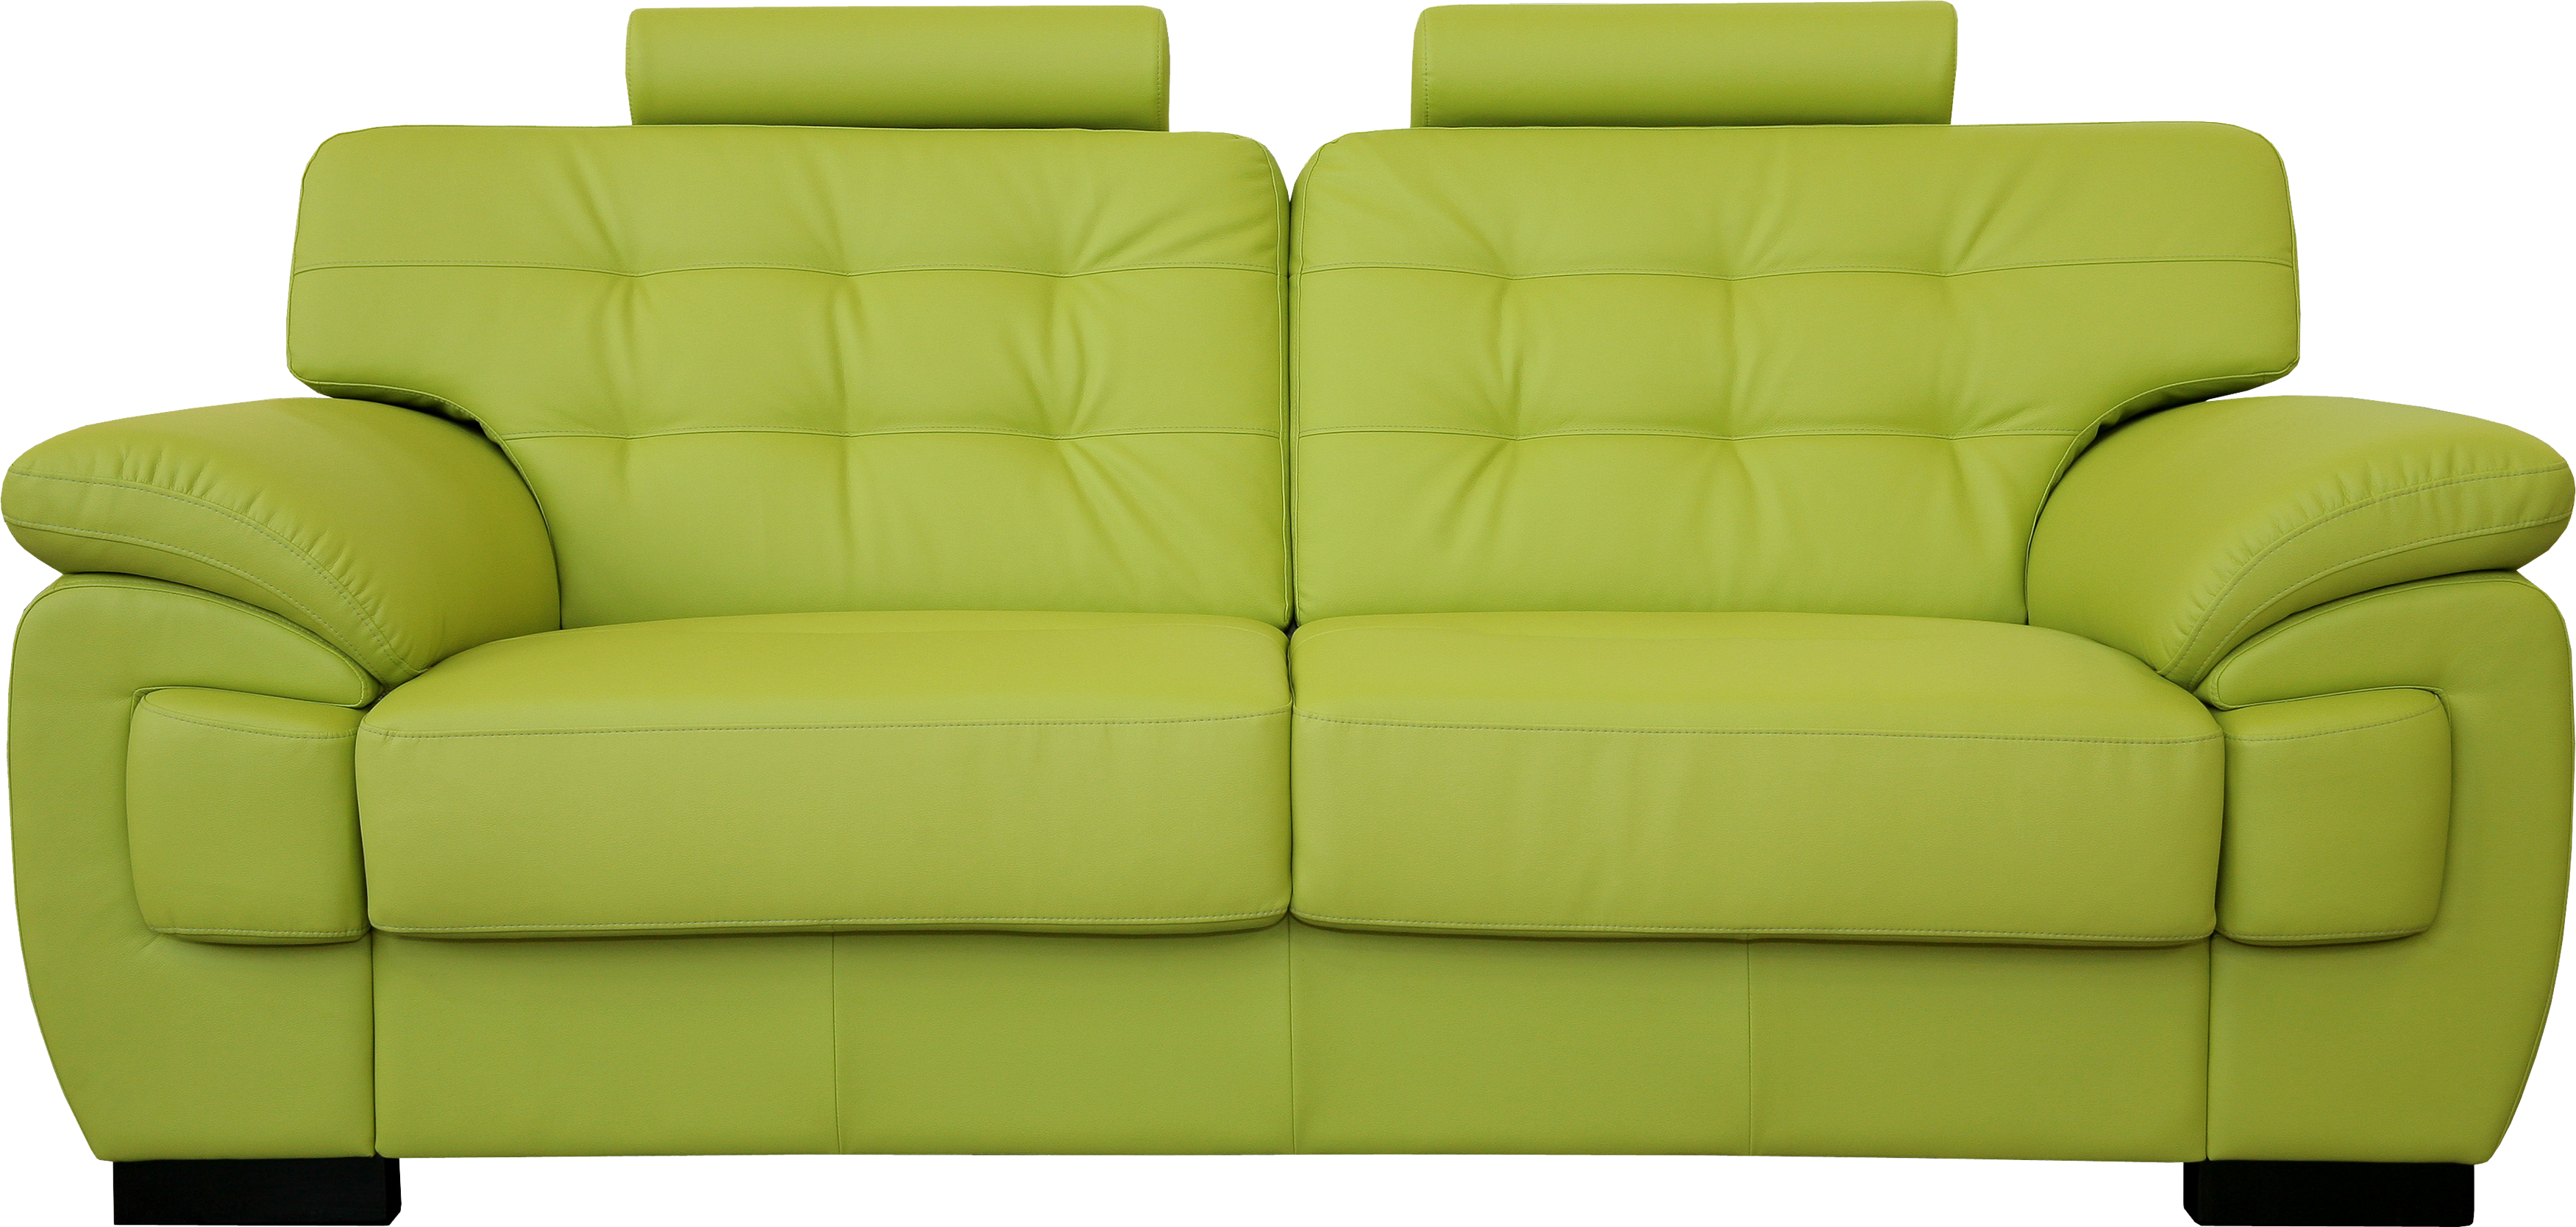 Ghế sofa màu xanh lá cây